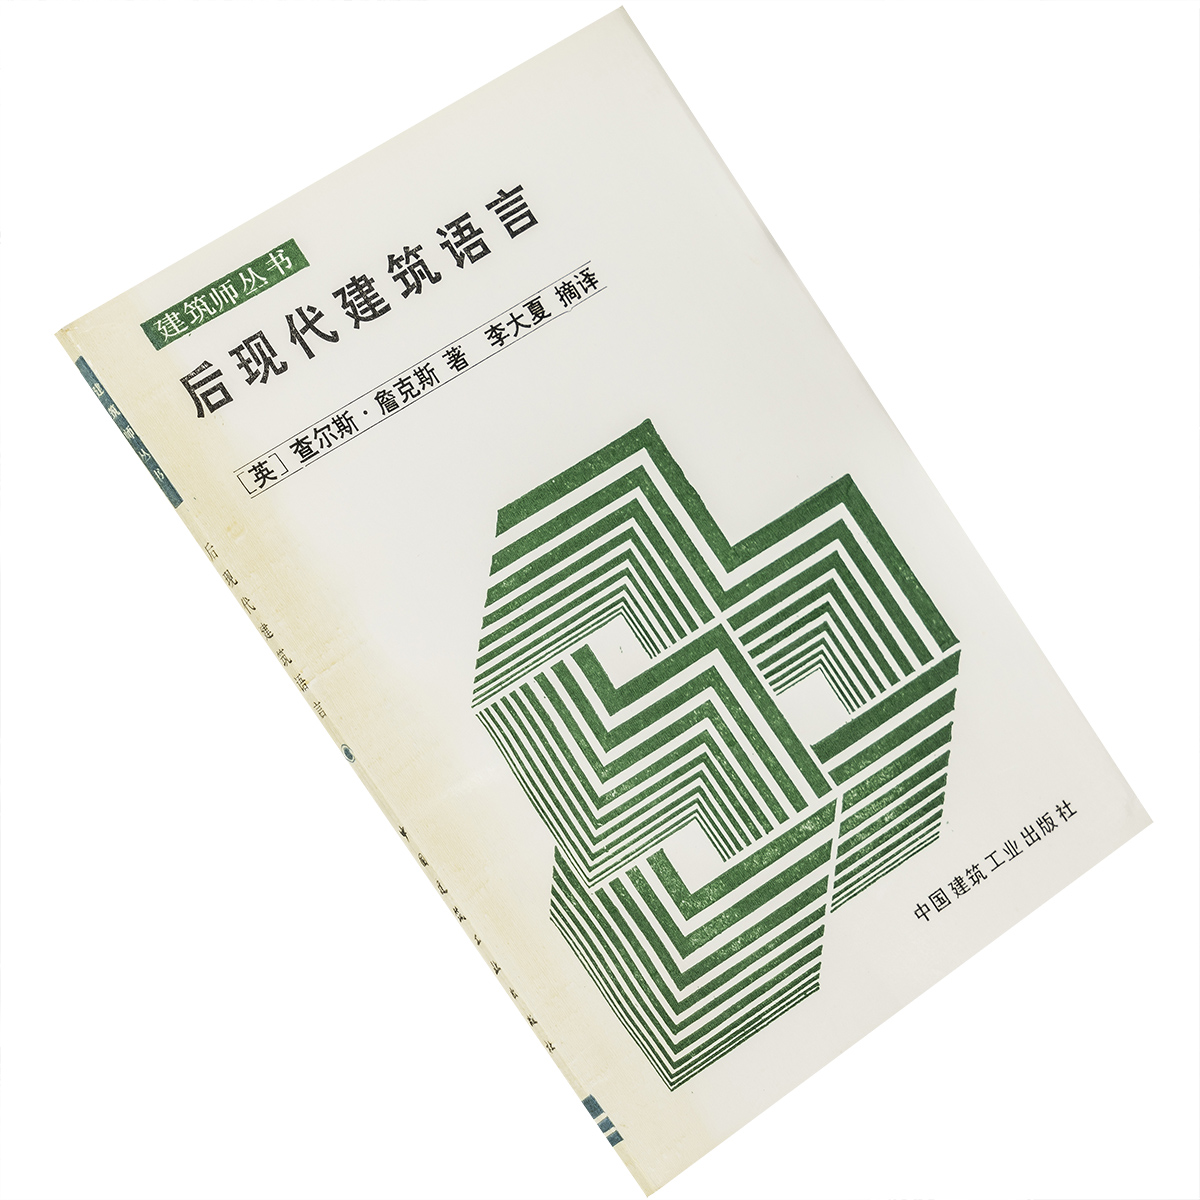 后现代建筑语言 查尔斯·詹克斯 建筑师丛书 9787112003563 中国建筑工业出版社 正版书籍 老版